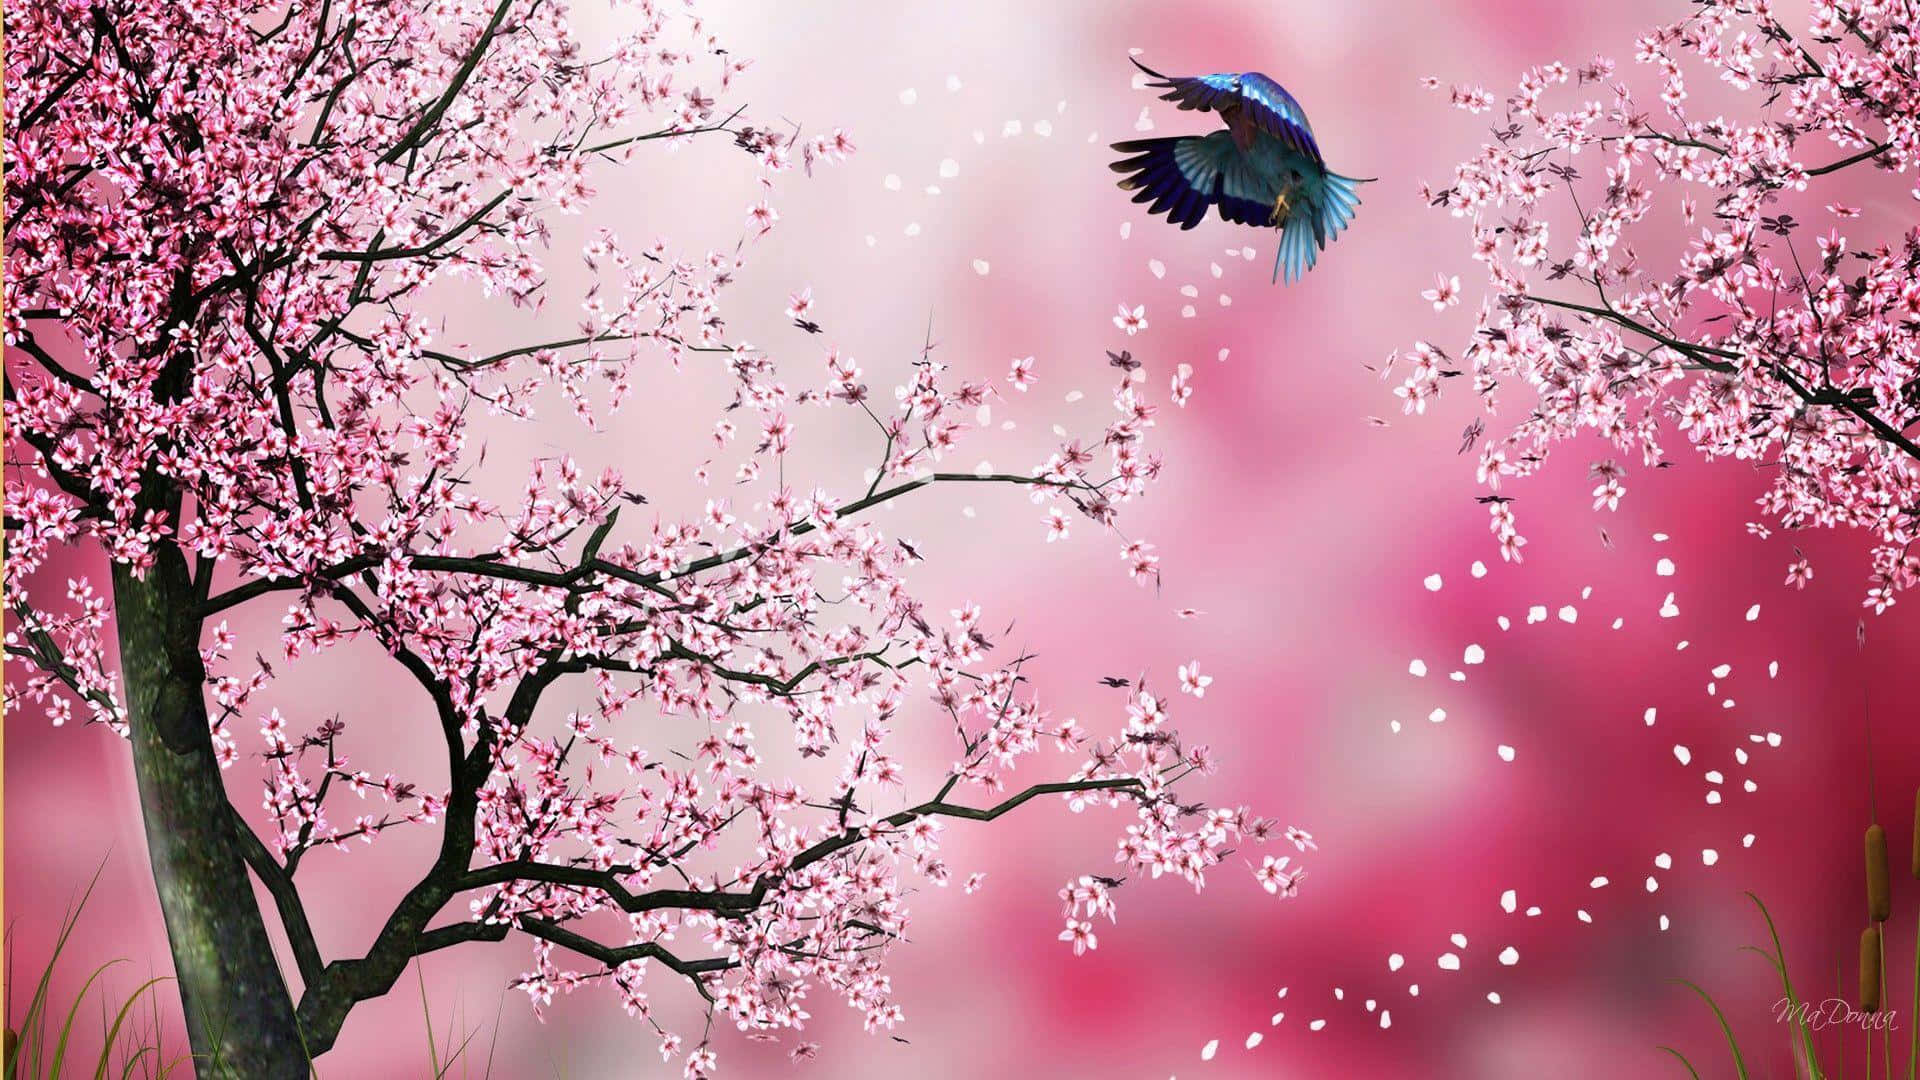 A beautiful sakura tree in springtime